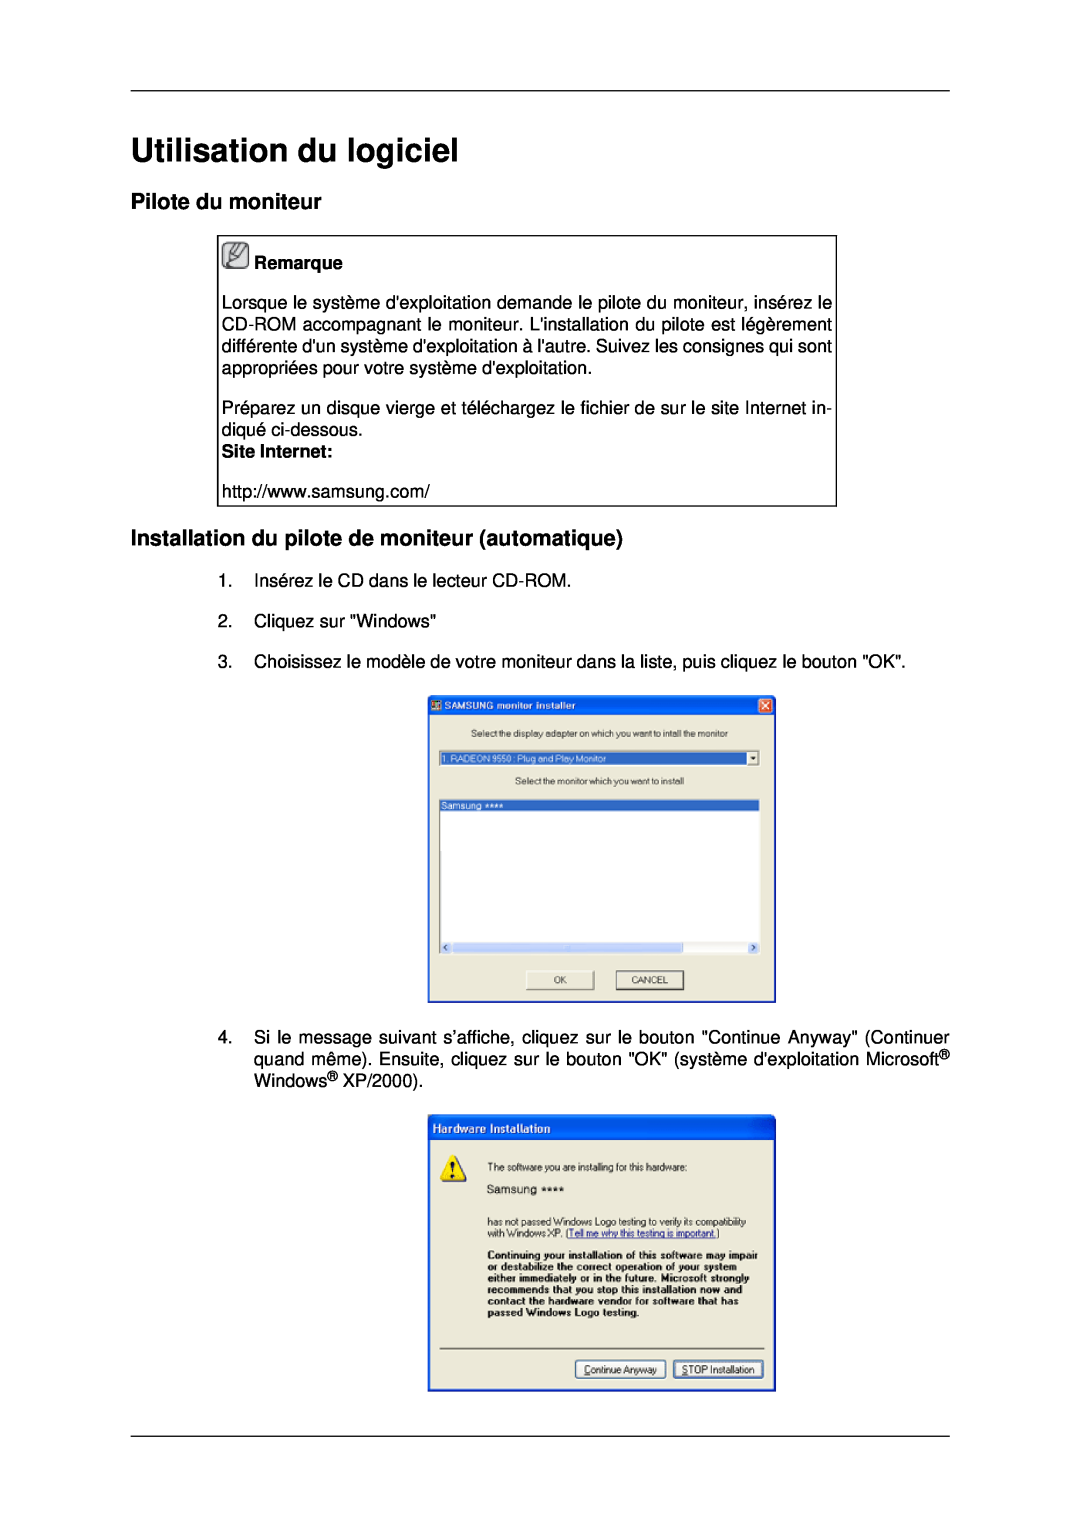 Samsung LH40MRPLBF/EN manual Utilisation du logiciel, Pilote du moniteur, Installation du pilote de moniteur automatique 